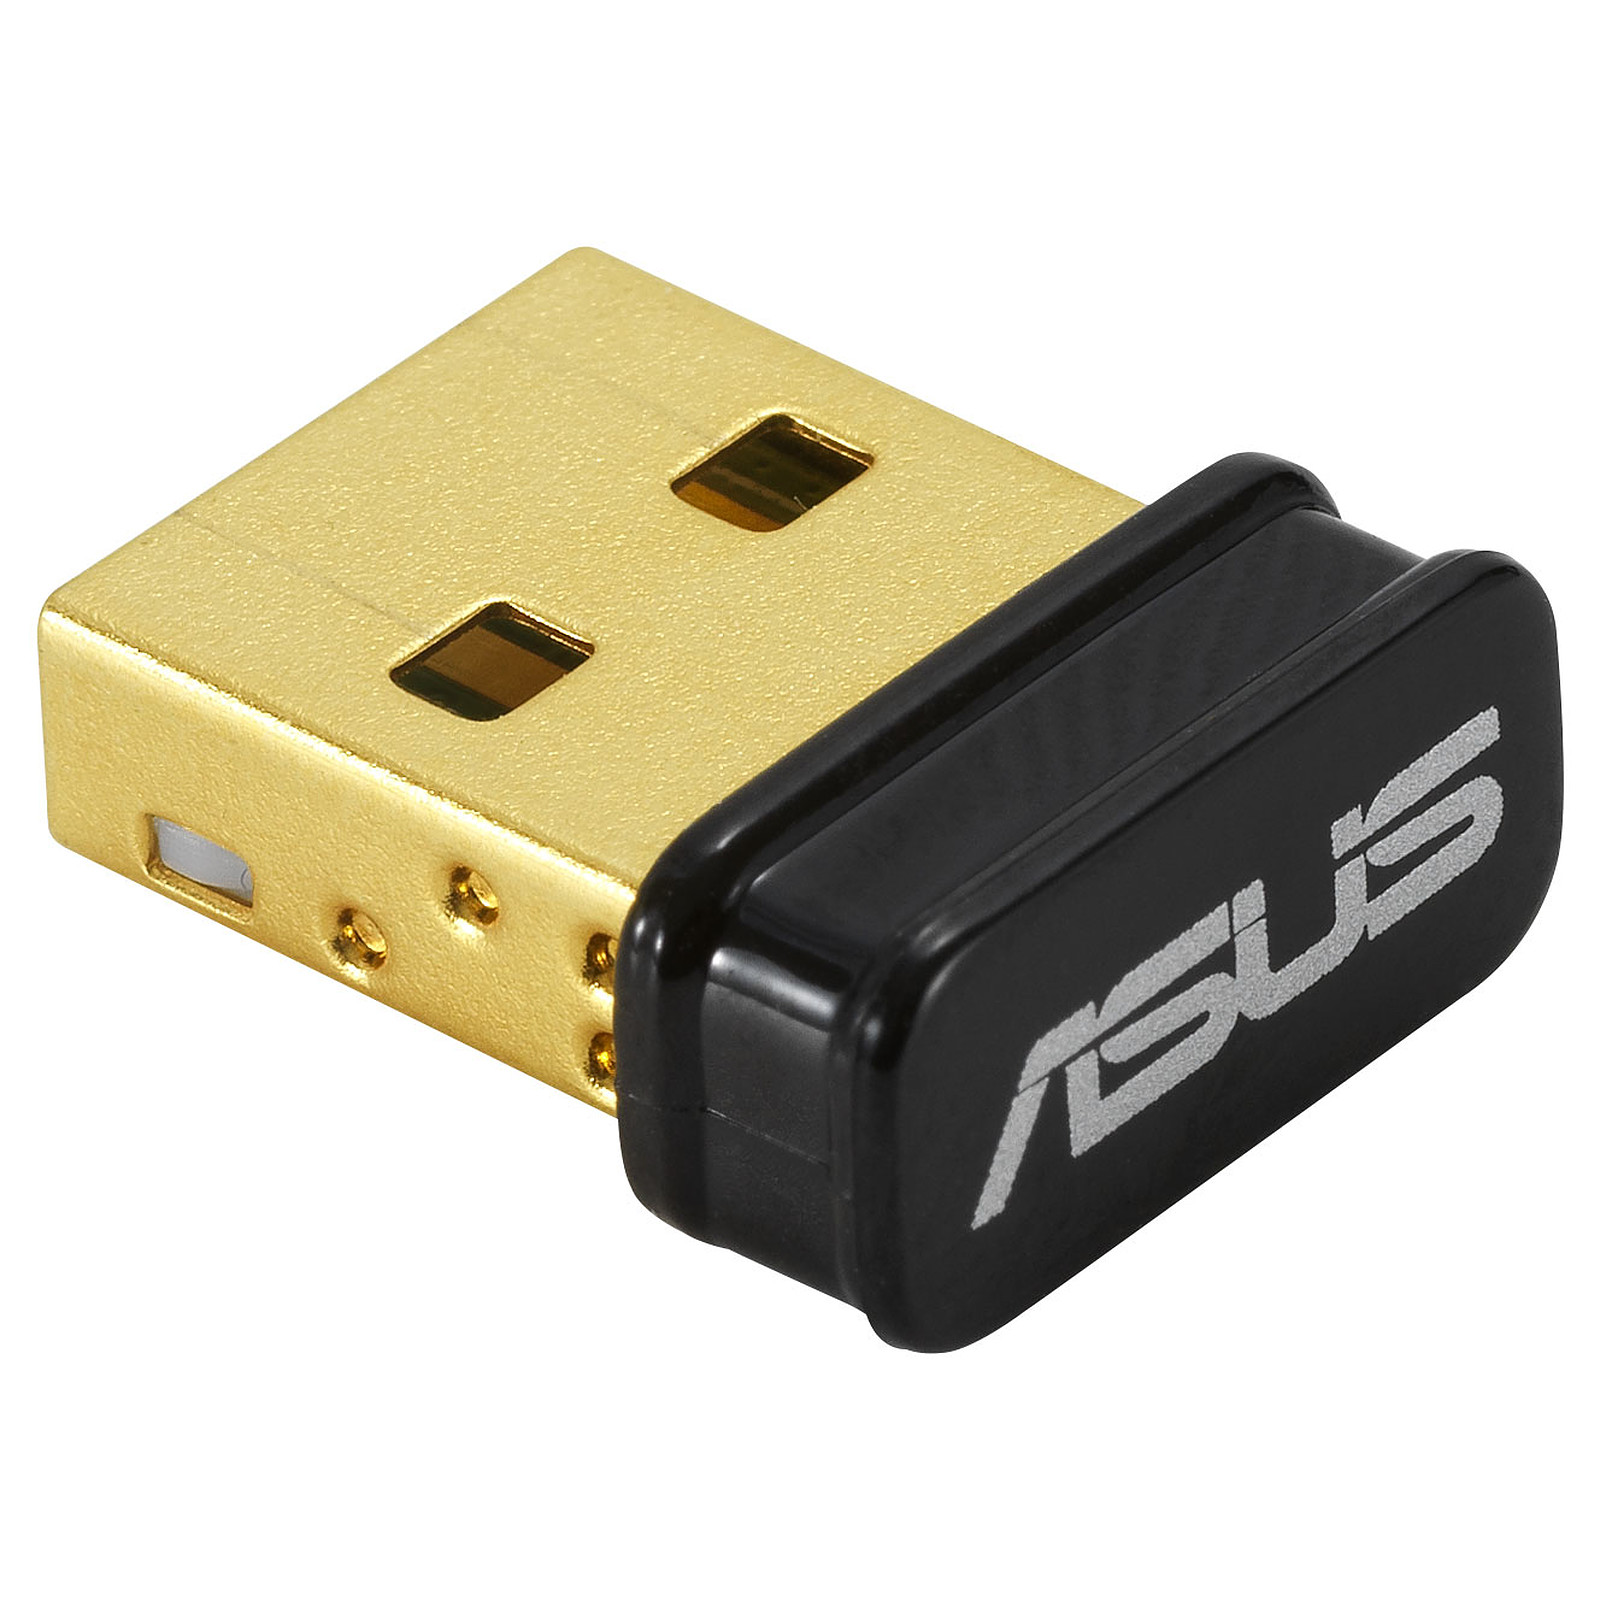 ASUS USB-N10 Nano B1 - Carte reseau ASUS